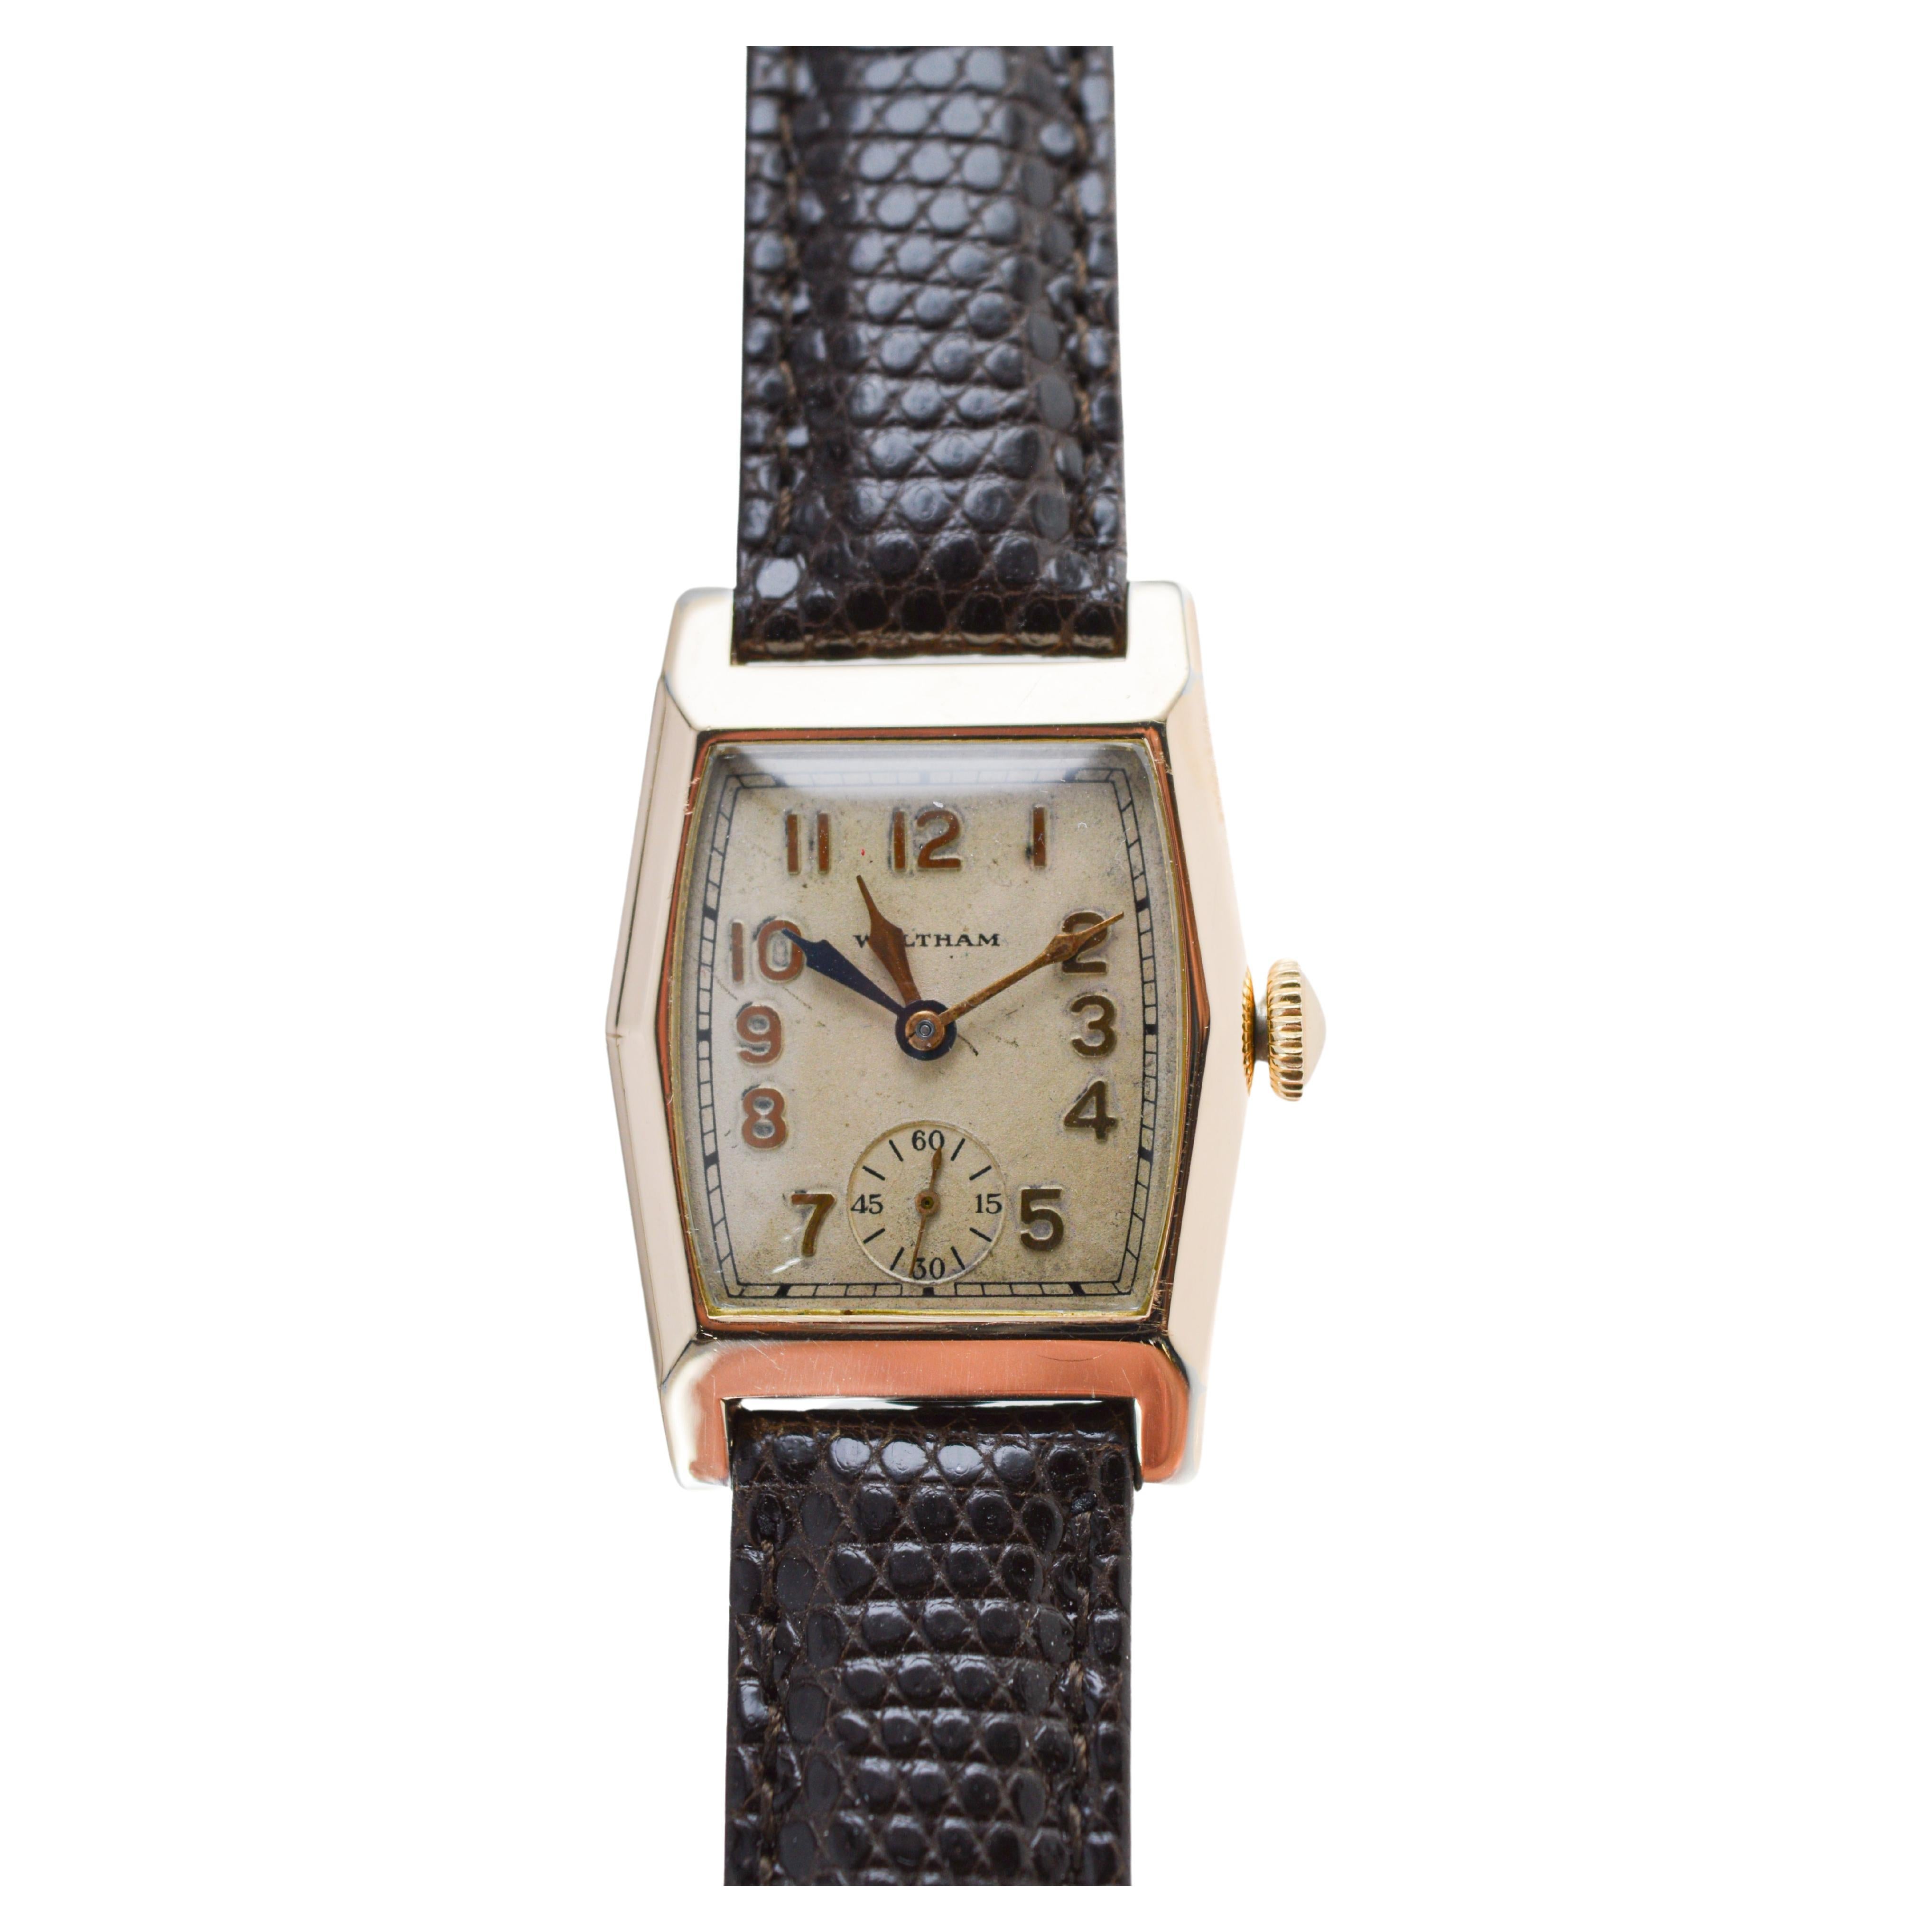 Waltham Yellow Gold Filled Art Deco Dual Time Watch with Original Dial and Strap (Montre à double fuseau horaire avec cadran et bracelet d'origine) 5